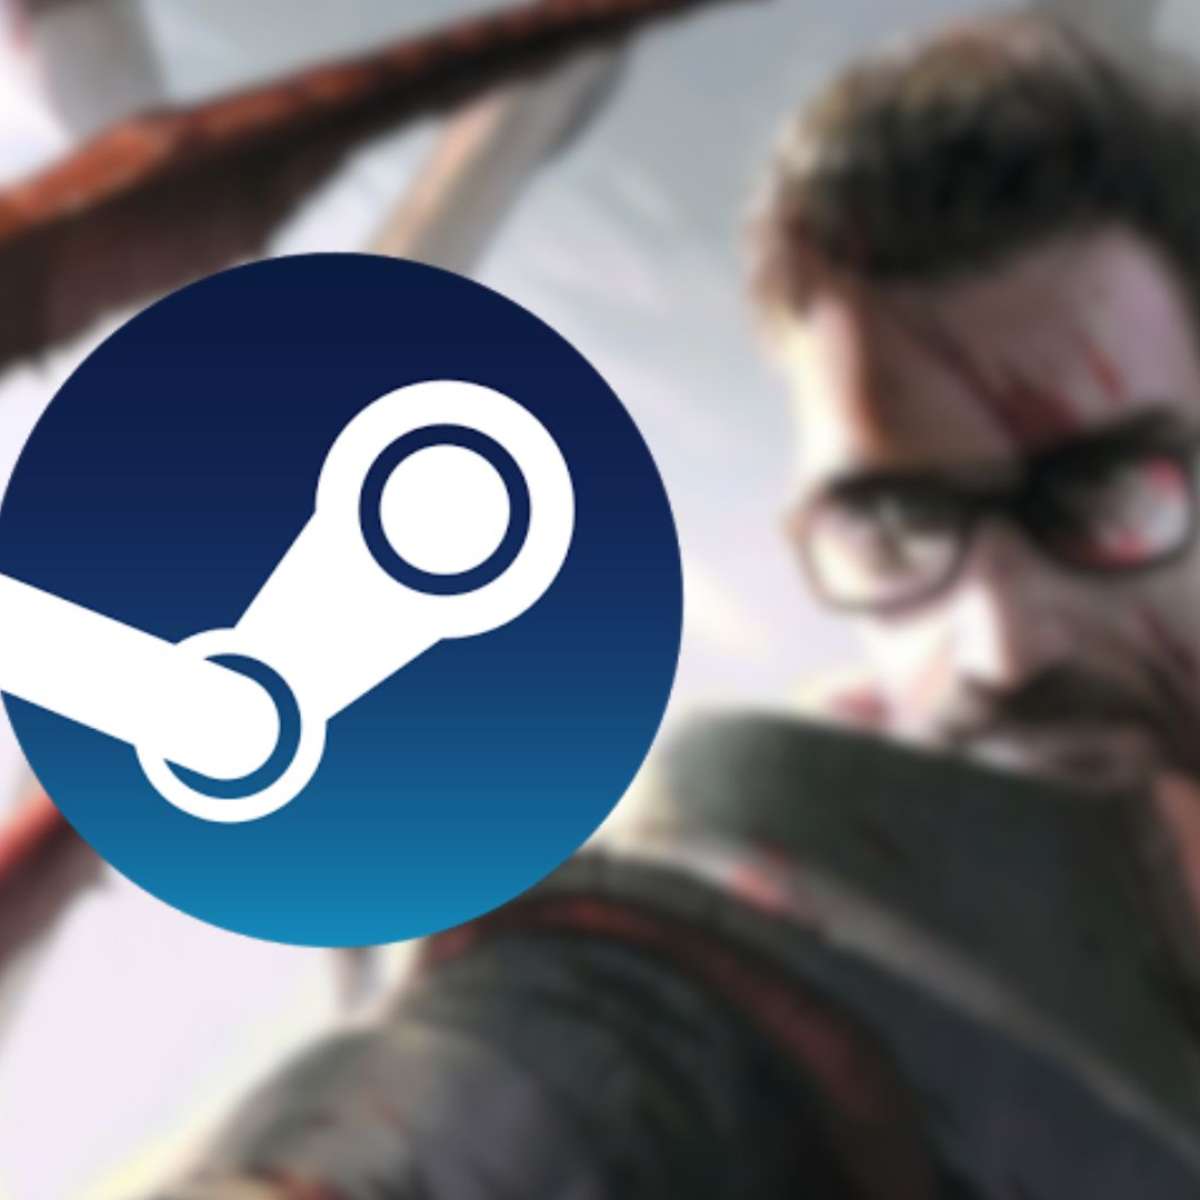 Aproveite! Todos os jogos de Half-Life ficam disponíveis de graça na Steam  